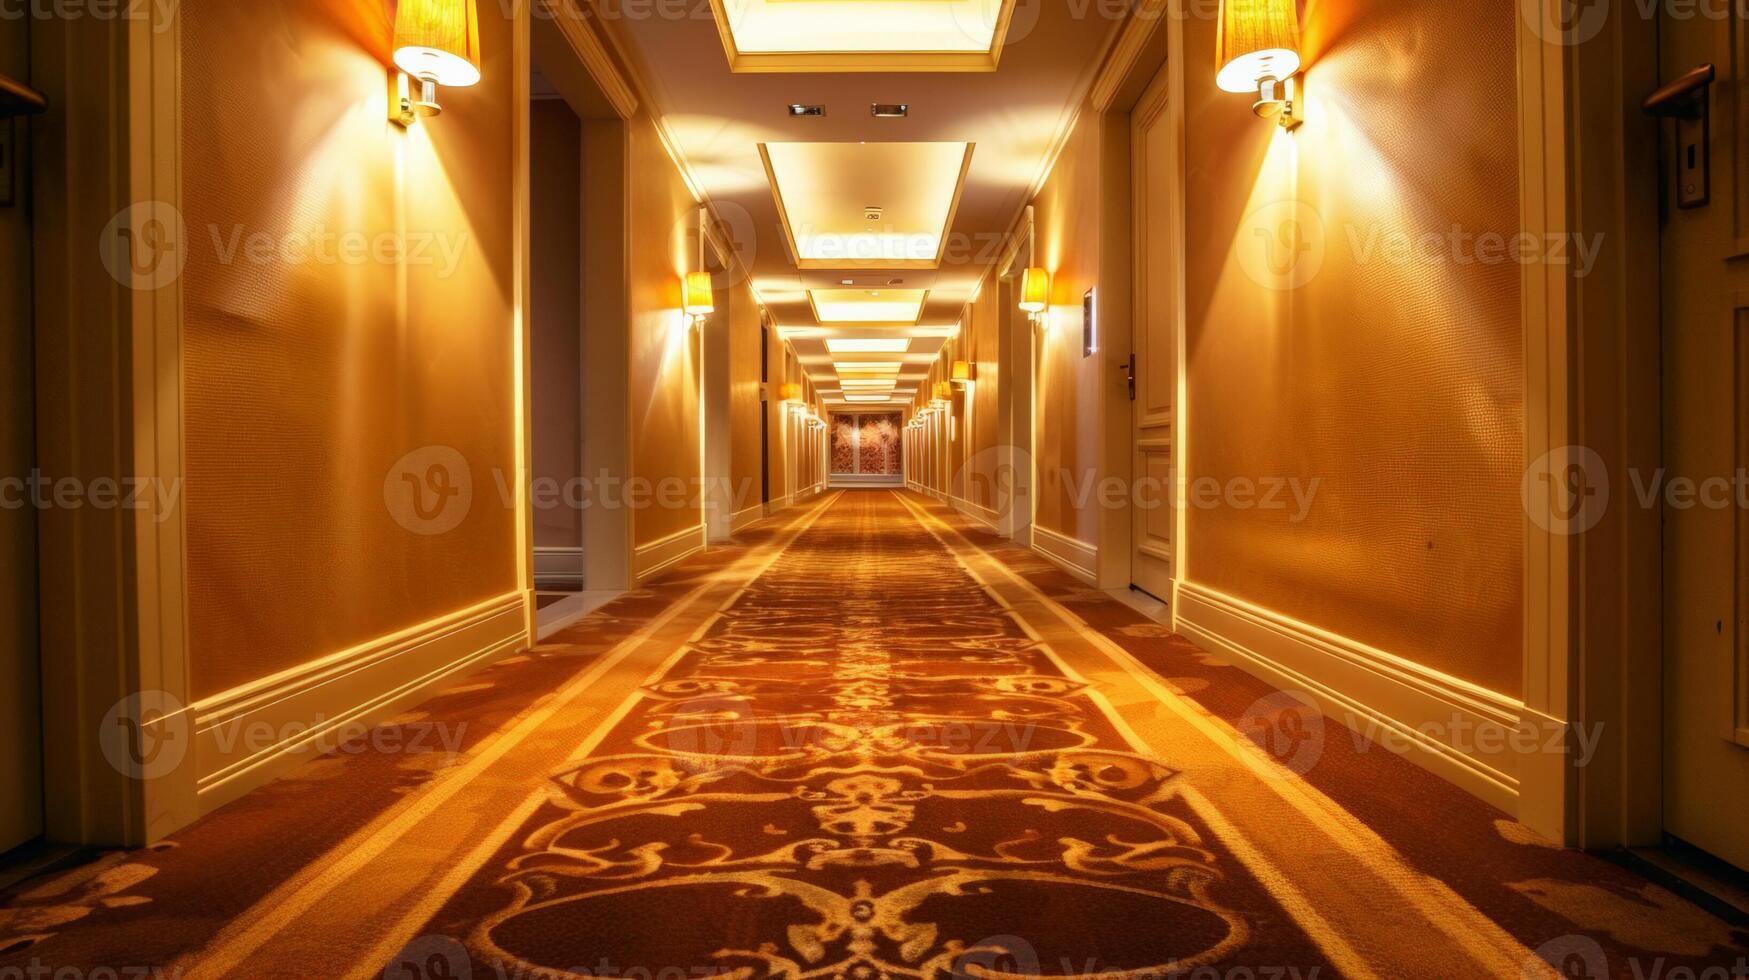 elegante hotel corredor iluminado de parede arandelas, com ornamentado tapete conduzindo para desaparecimento apontar, arquitetura e luxo viagem conceitos foto